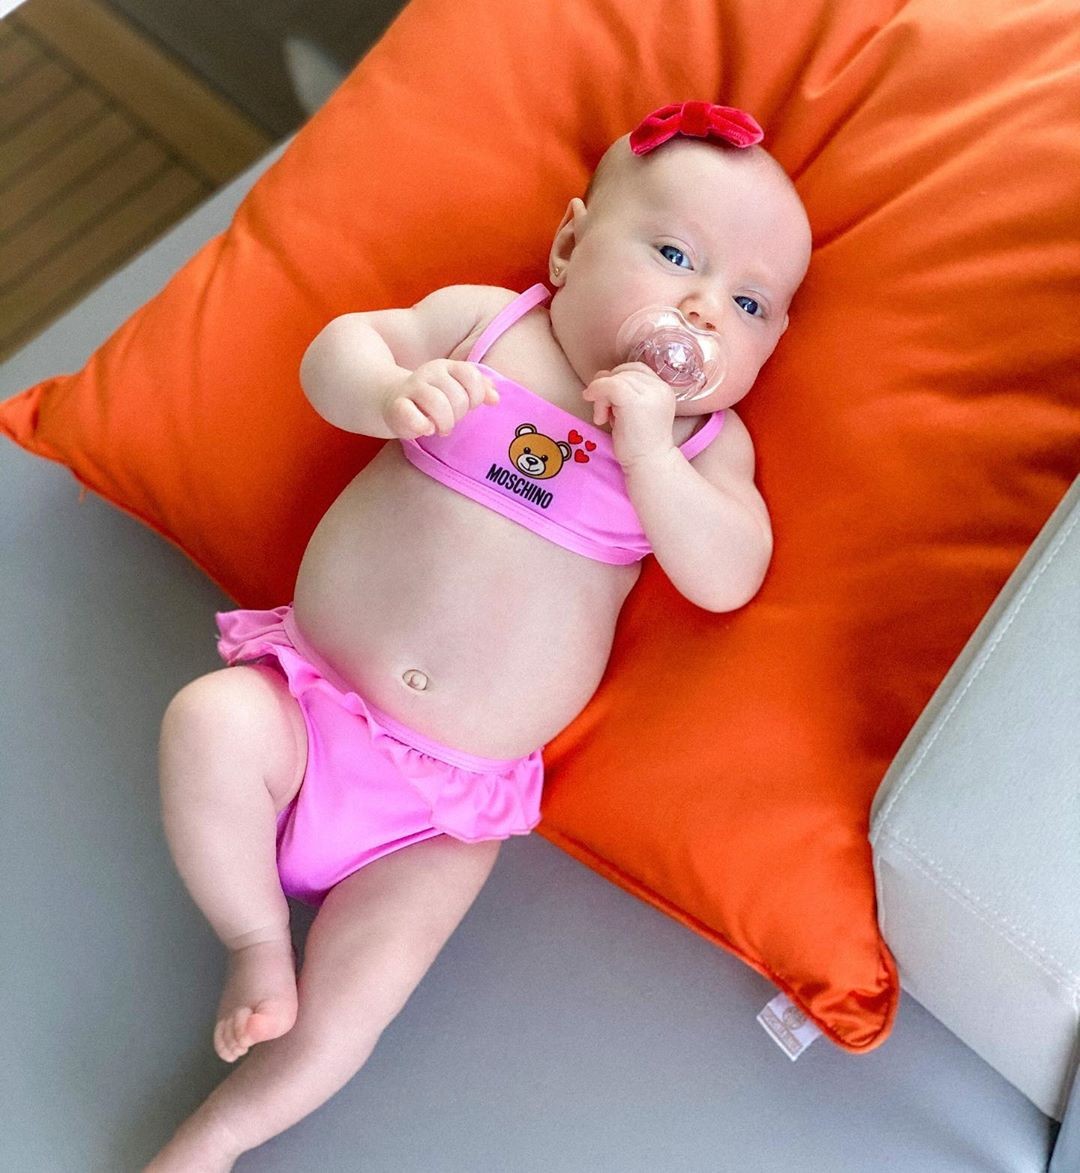 Vicky Justus, de 1 mês, com biquíni de grife (Foto: Reprodução/Instagram)